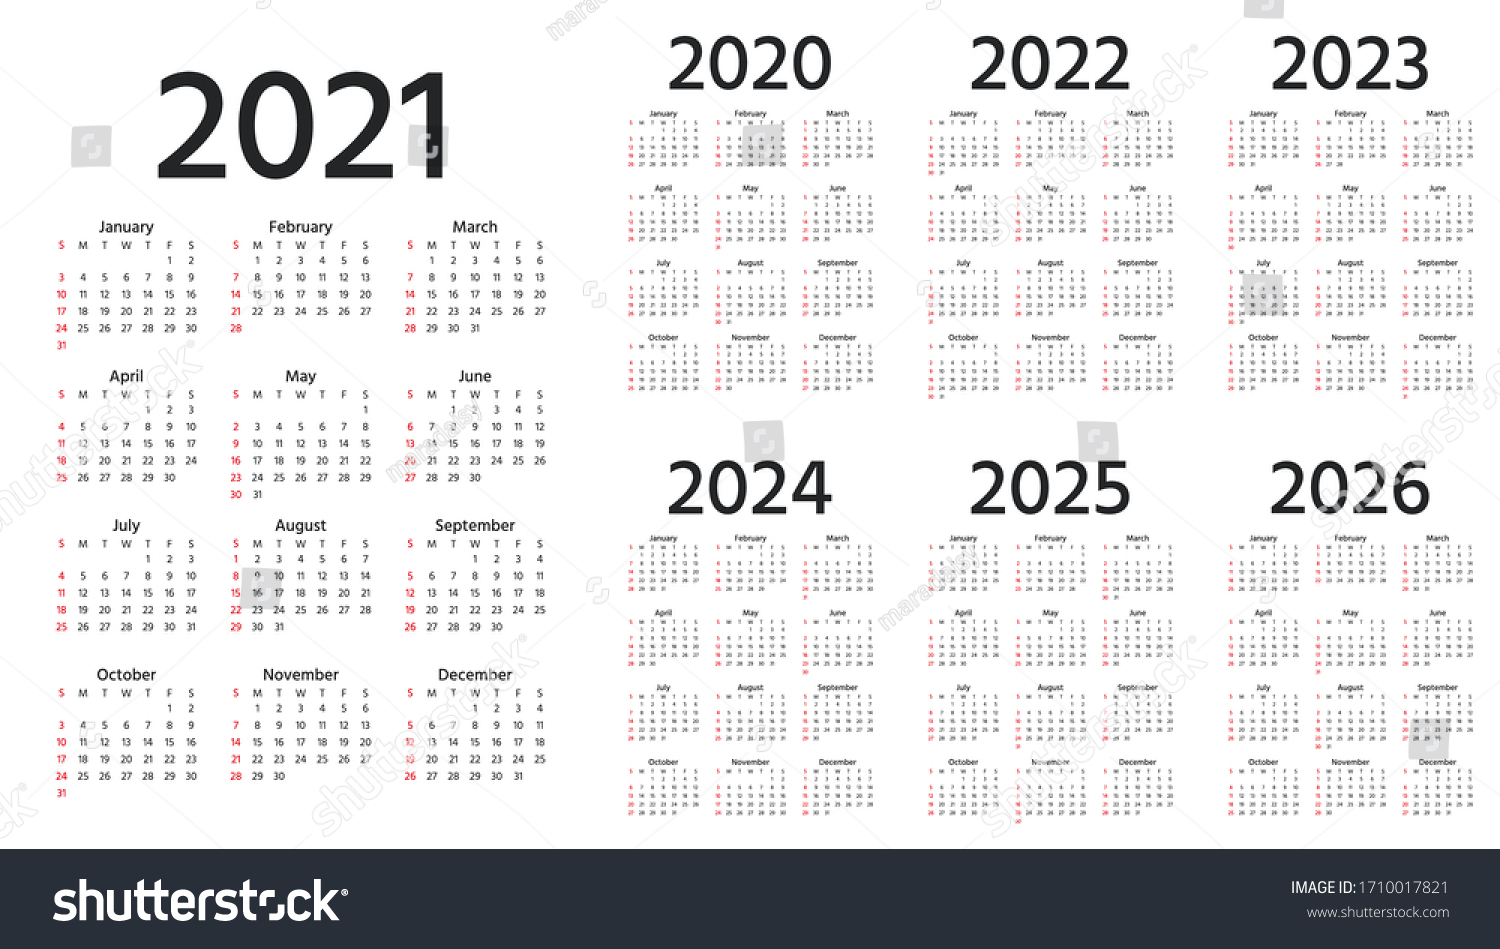 Calendar 2021 2022 2023 2024 2025 Stock Vector (Royalty Free) 1710017821